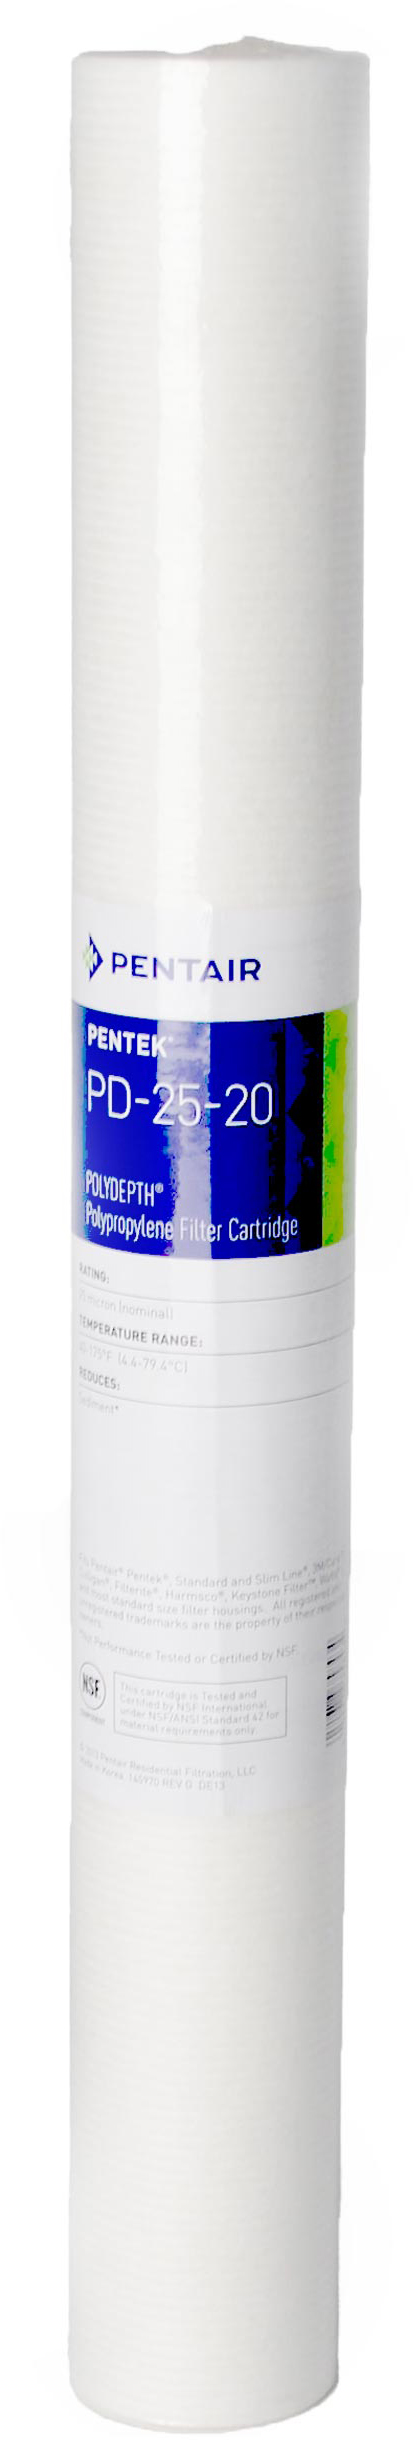 Картридж Pentek для холодной воды Pentek PD-5-20 Polydepth (155756-43)